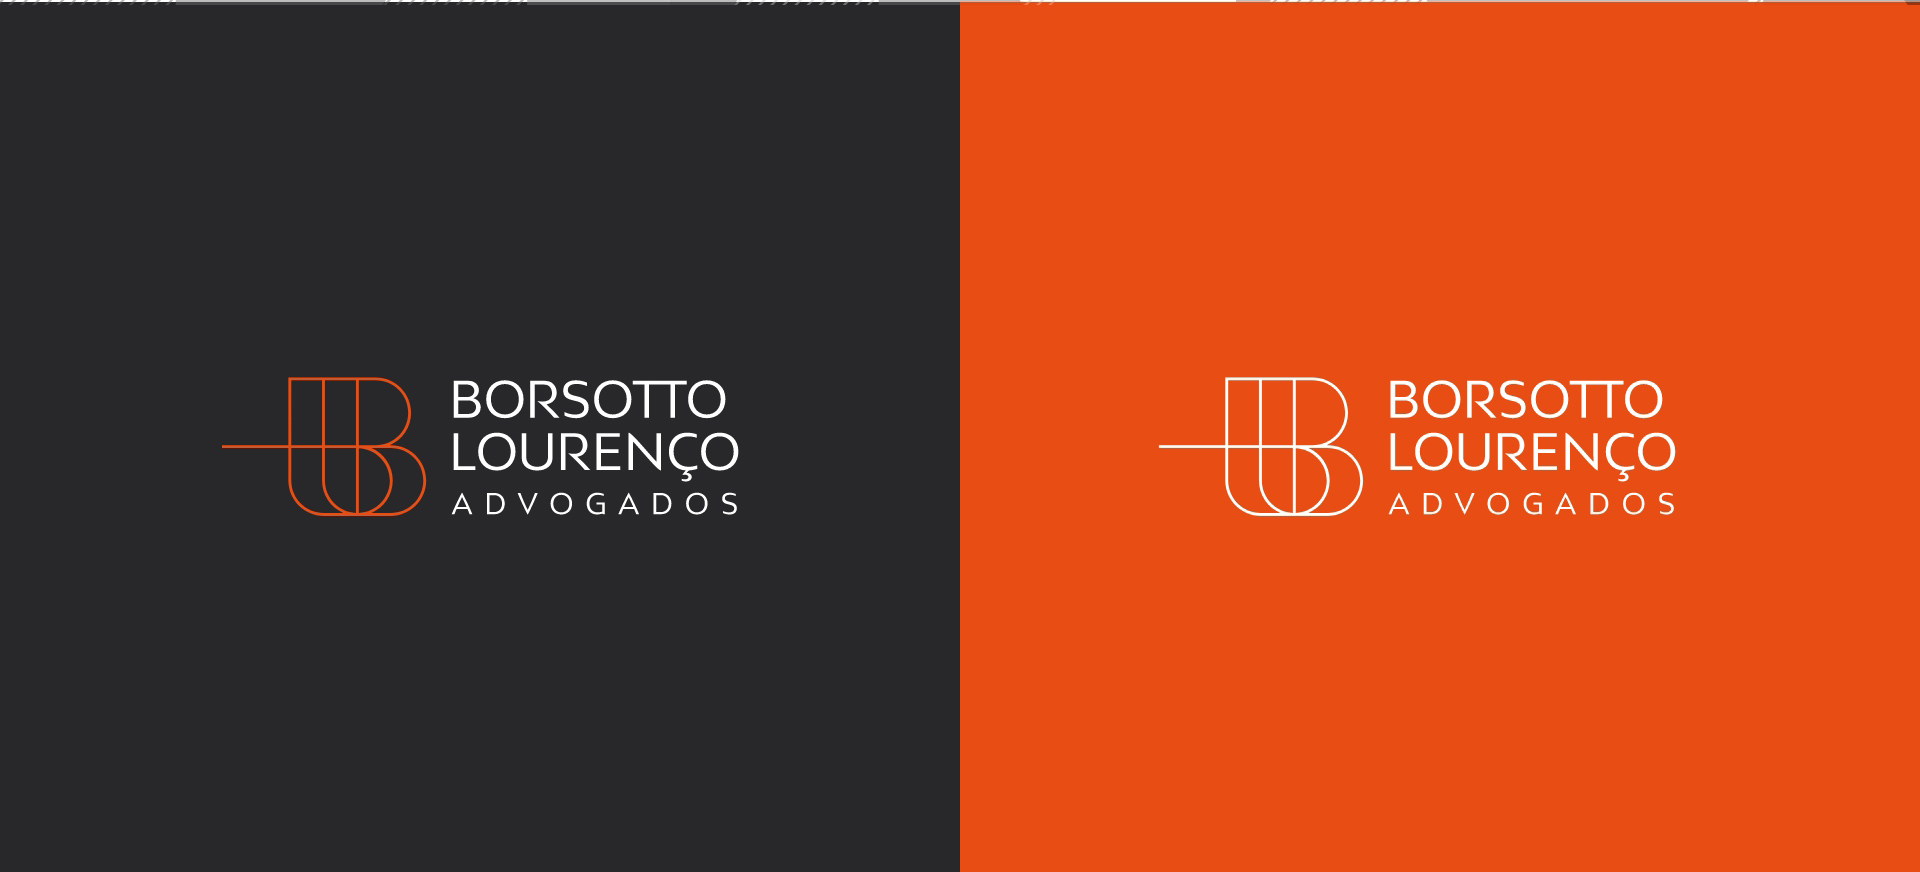 Identidade Visual Borsotto Lourenço Advogados desenvolvida pela Unitri Design